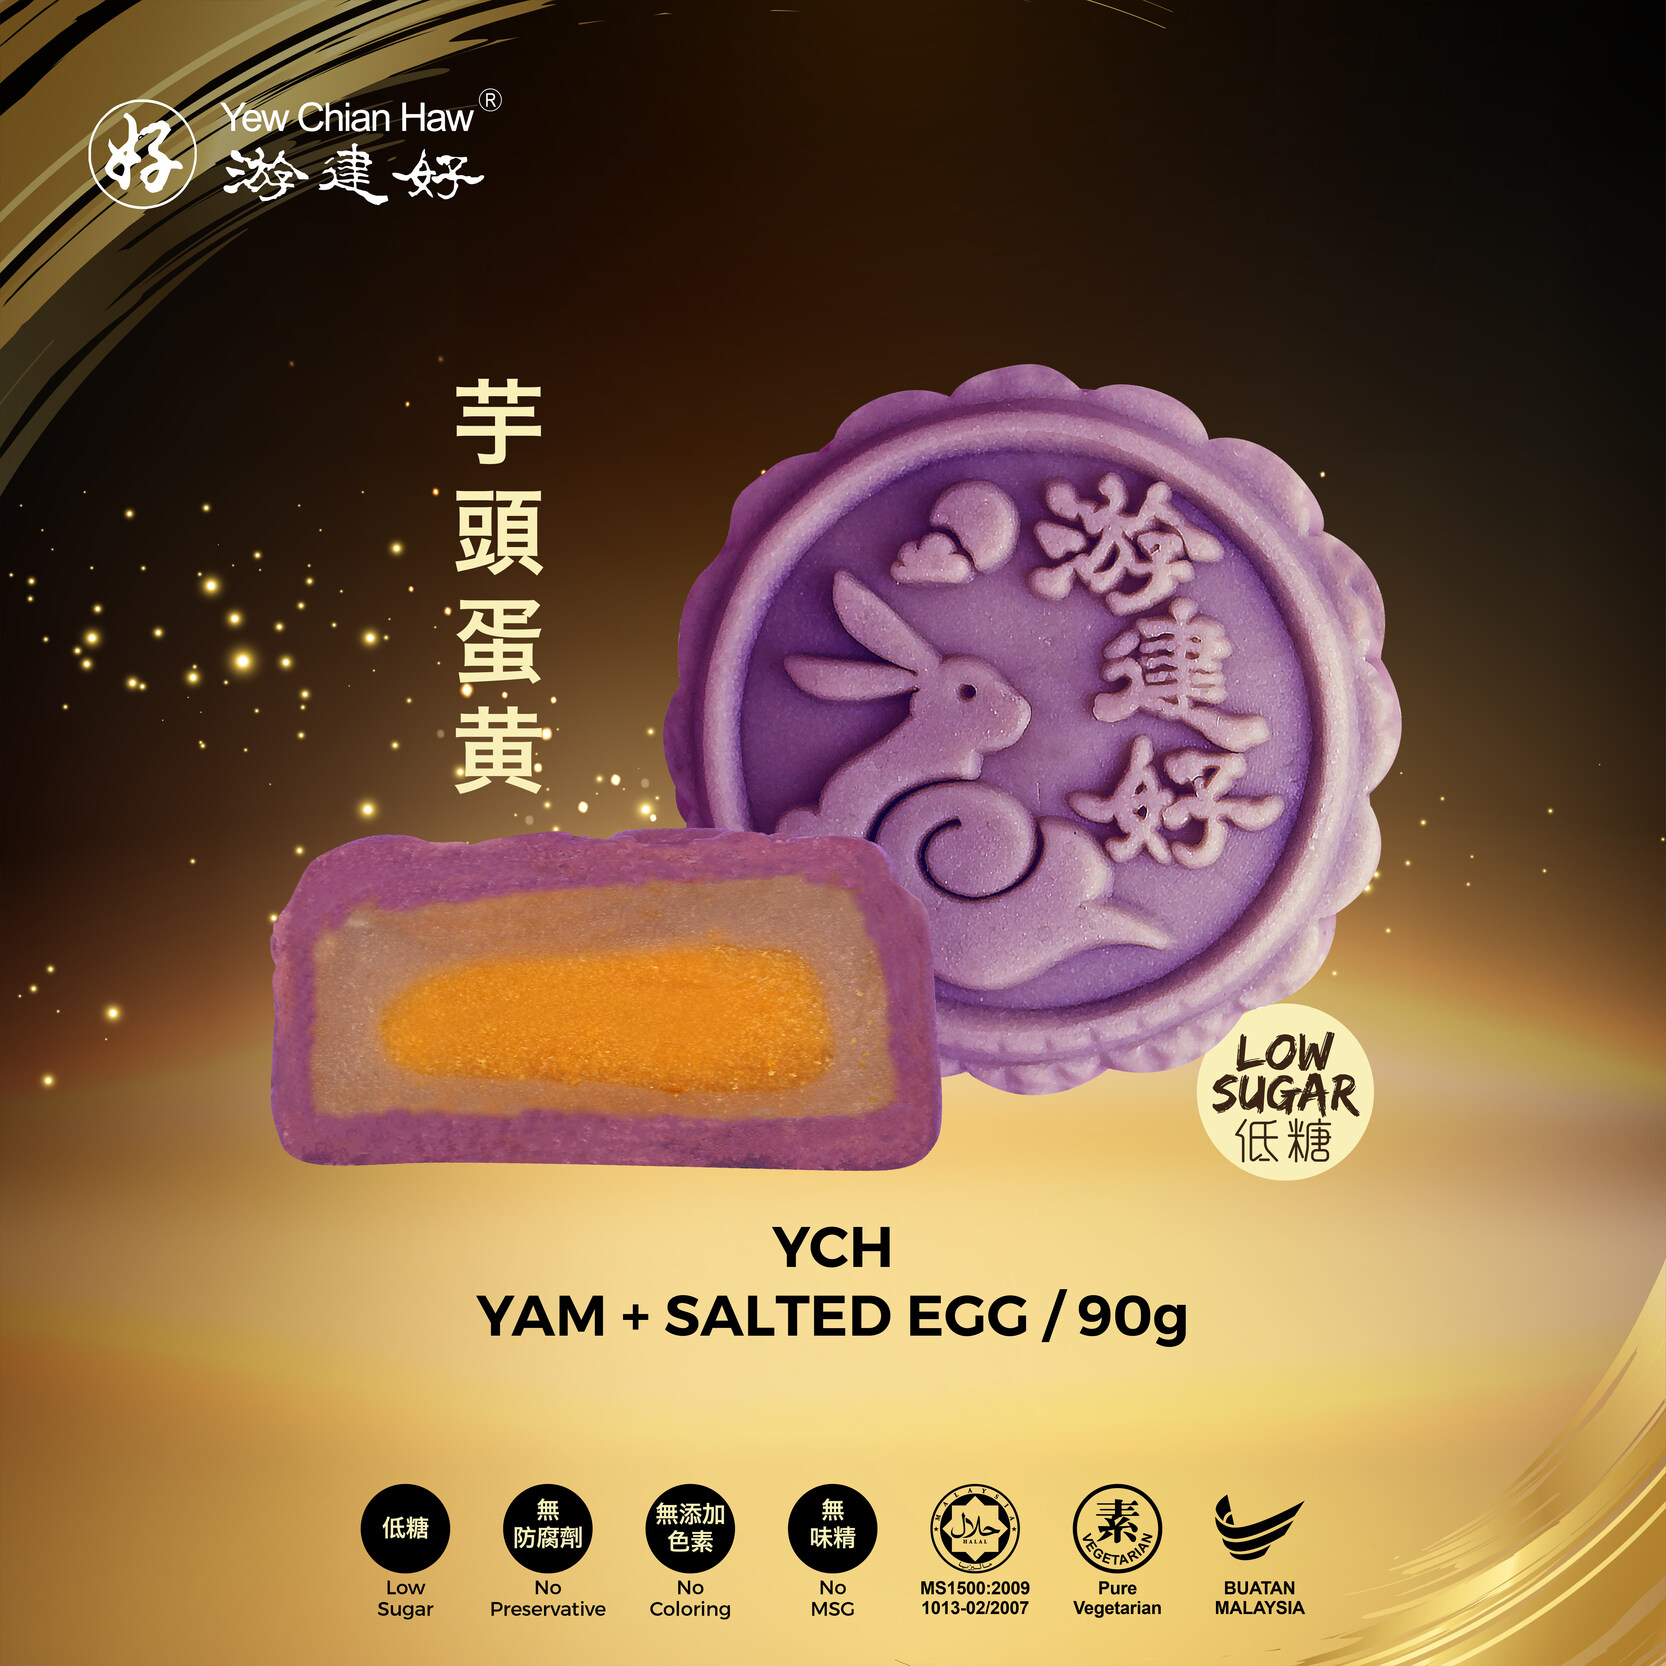 【低糖健康月餅】YCH 芋头蛋黄 HALAL Healthy Low Sugar Mooncake (Yam + Salted Egg) 游建好  [1 PCS] Yew Chian Haw Kuih Bulan